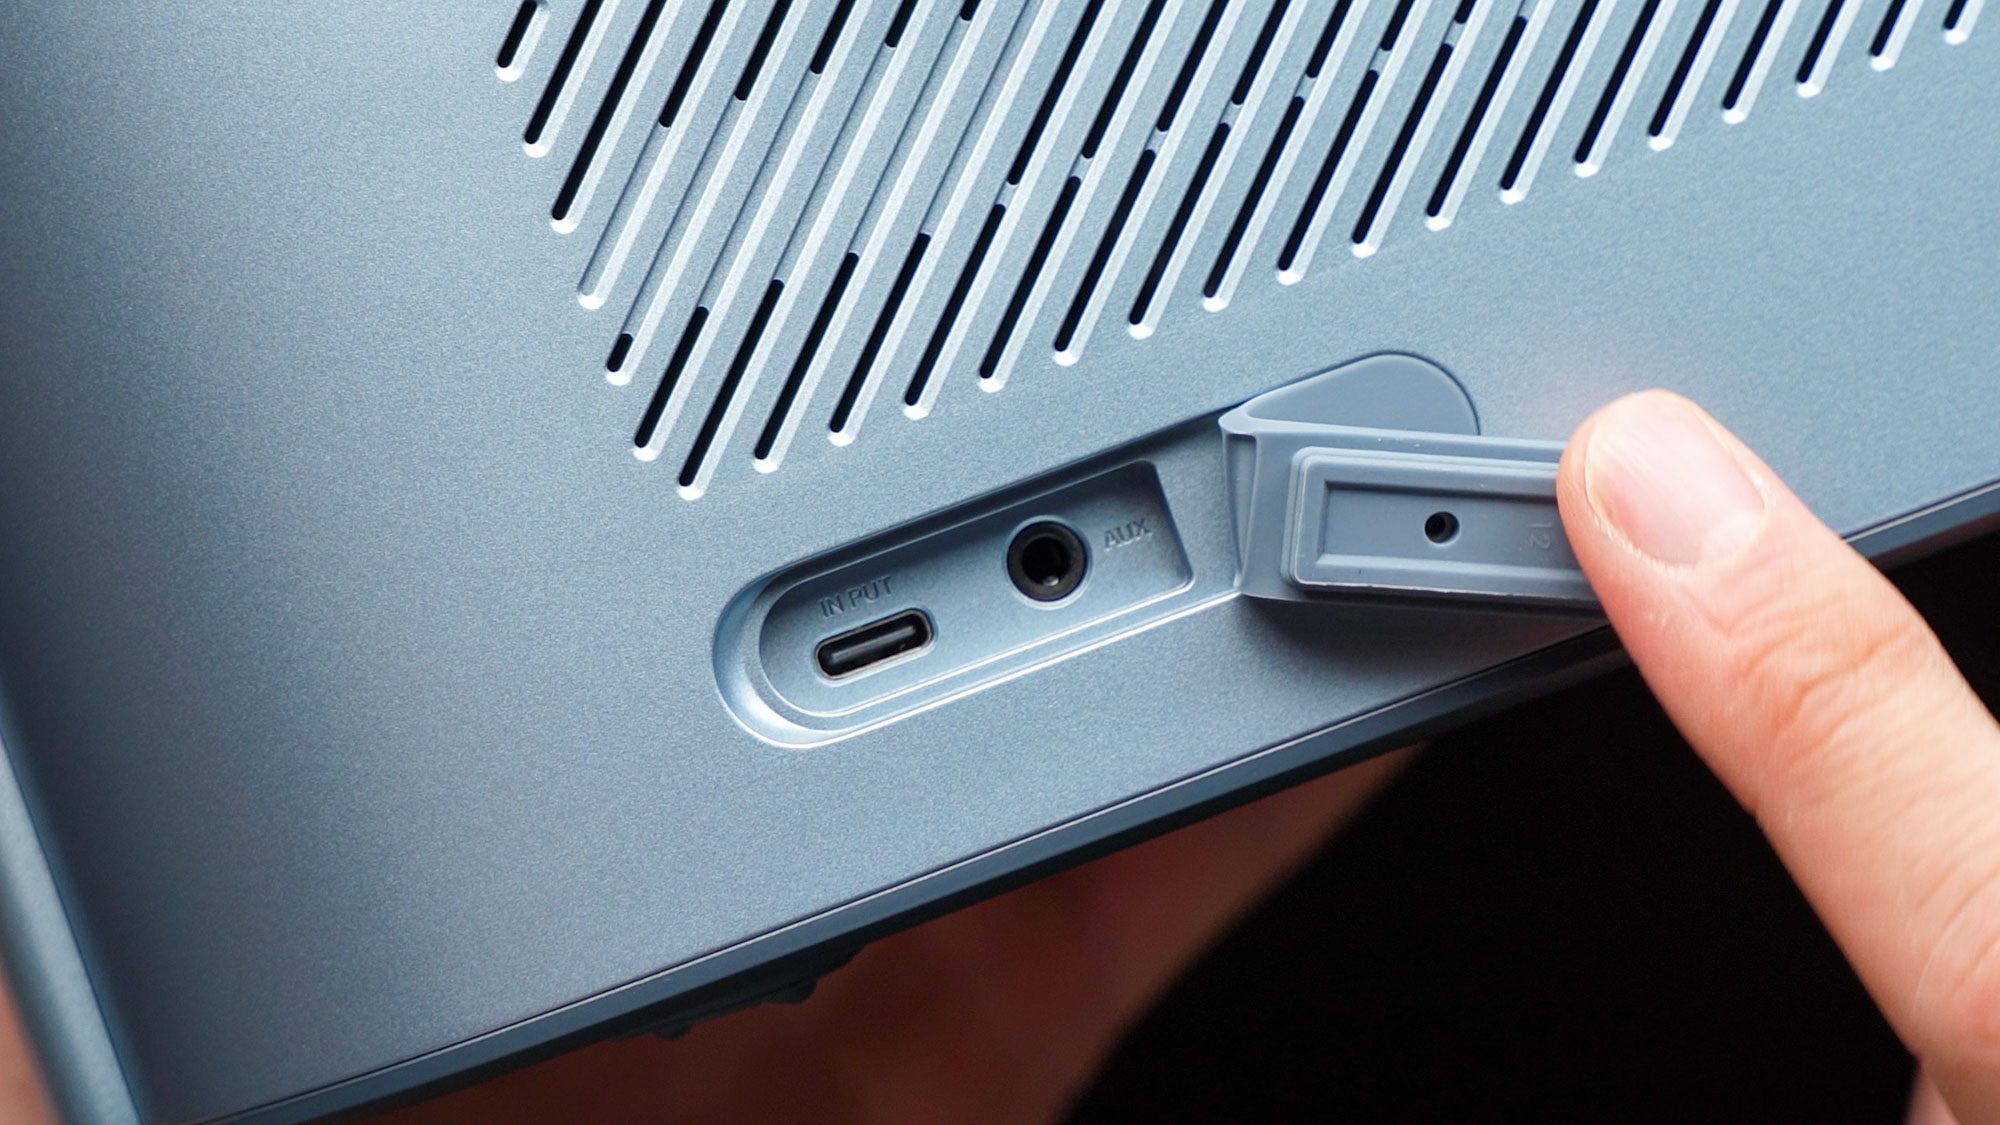 Rückseitige Anschlüsse inklusive USB-C und 3,5 mm AUX-Klinke.